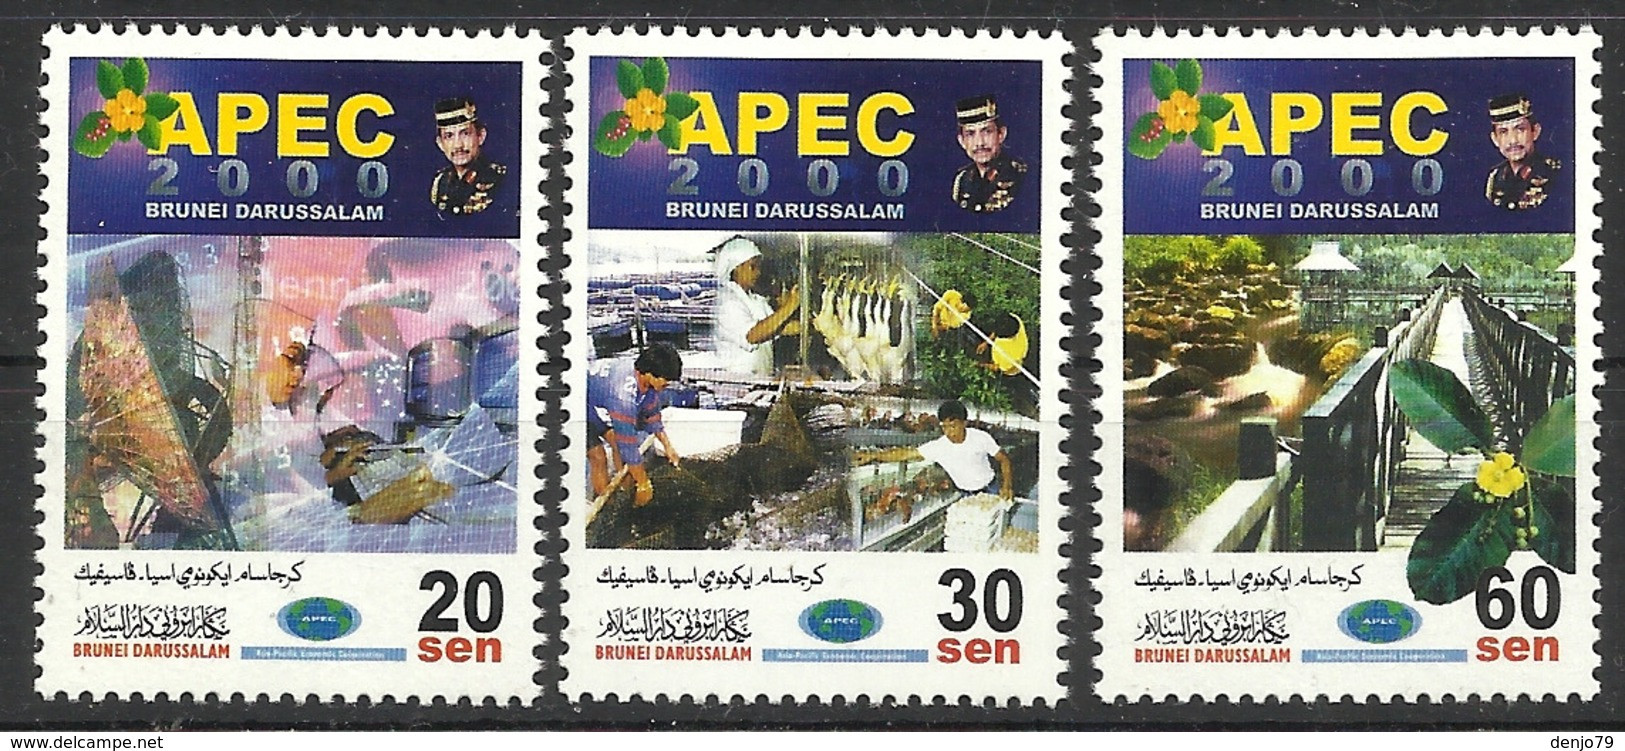 BRUNEI 2000 APEC SET MNH - Brunei (1984-...)